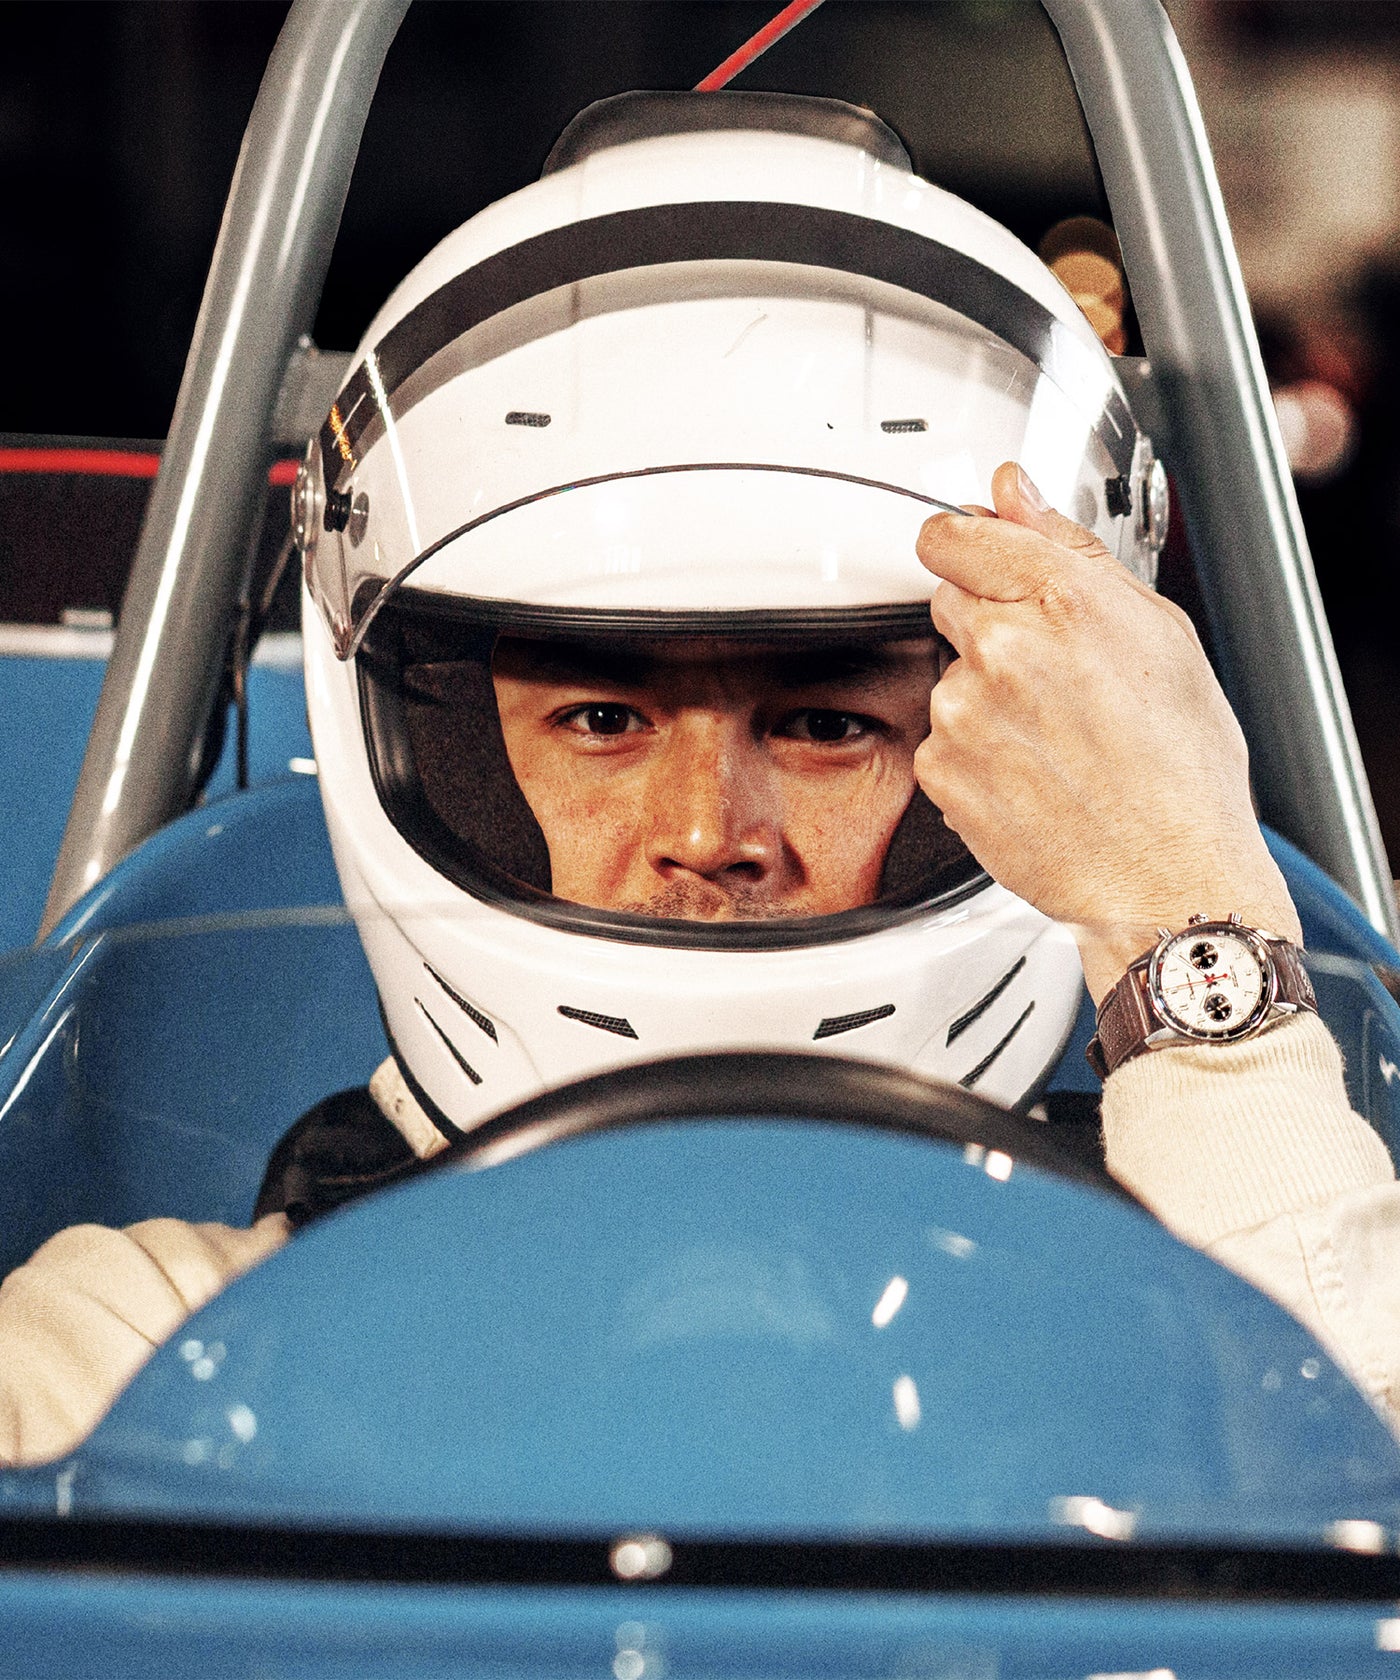 Un pilote de formule 1 des années 60 au volant qui ferme la visière de son casque avec sa montre ronde allure legend 60s panda au poignet